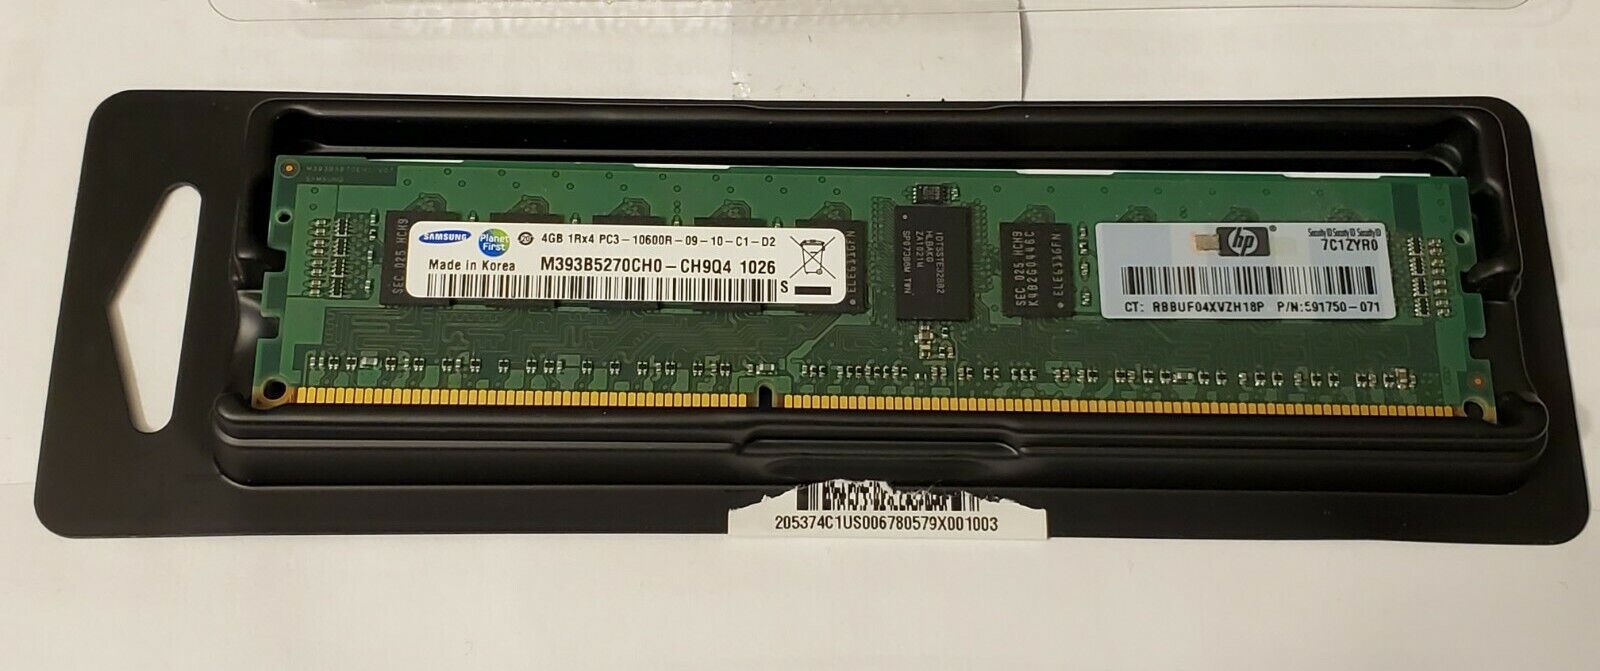 16gb ( 4 x 4gb ) ECC SERVER MEMORY RAM SAMSUNG PC3-10600R TETSED 